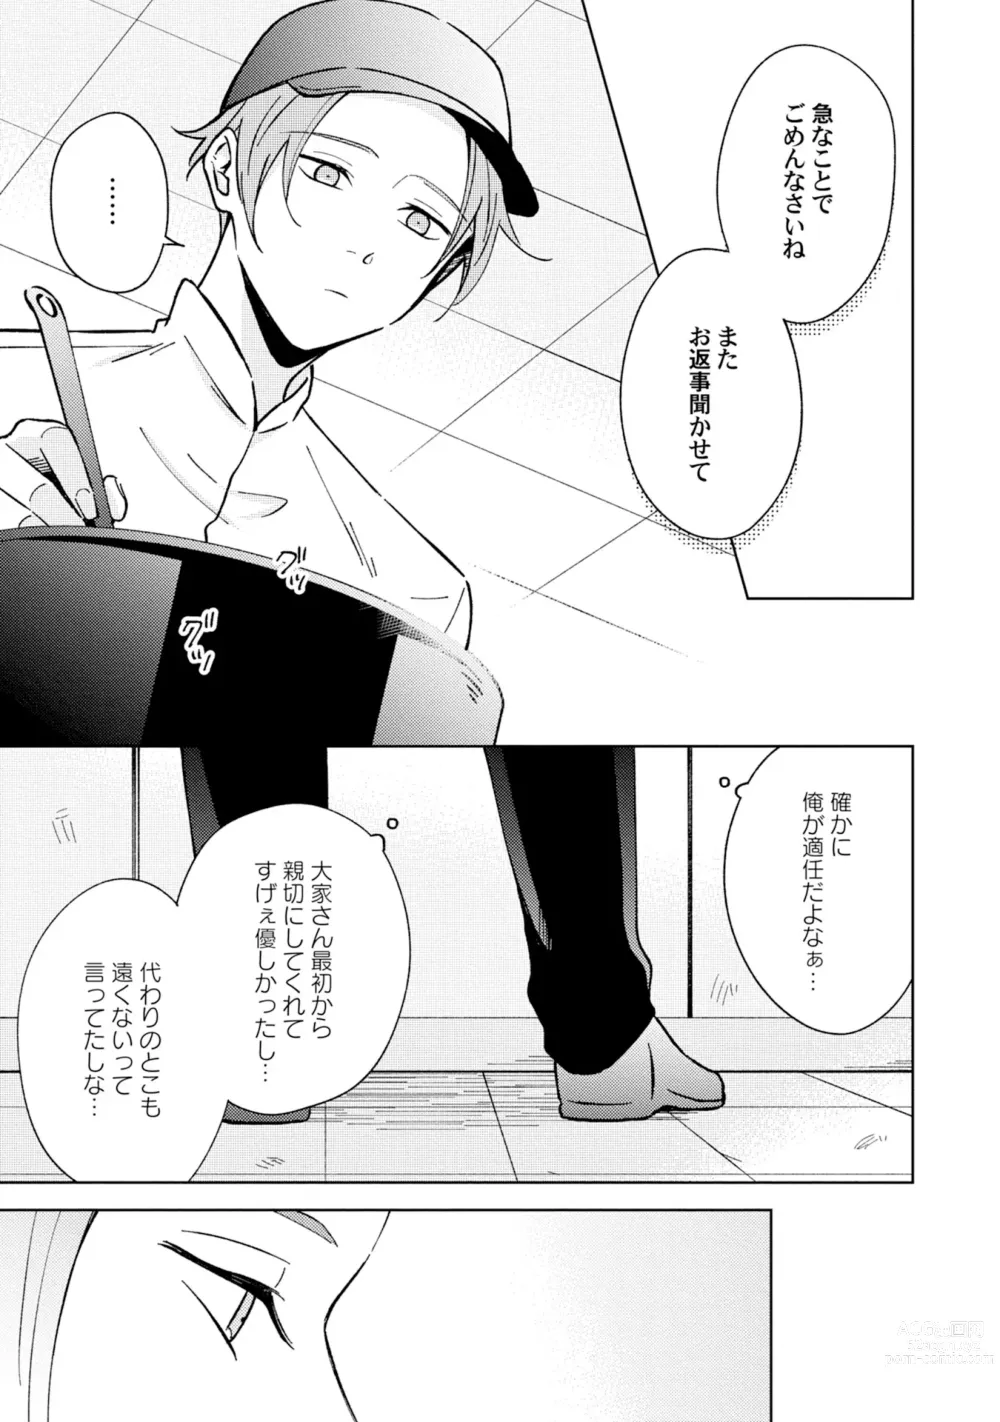 Page 13 of manga Toho 3-byou no Trouble Love Room 4